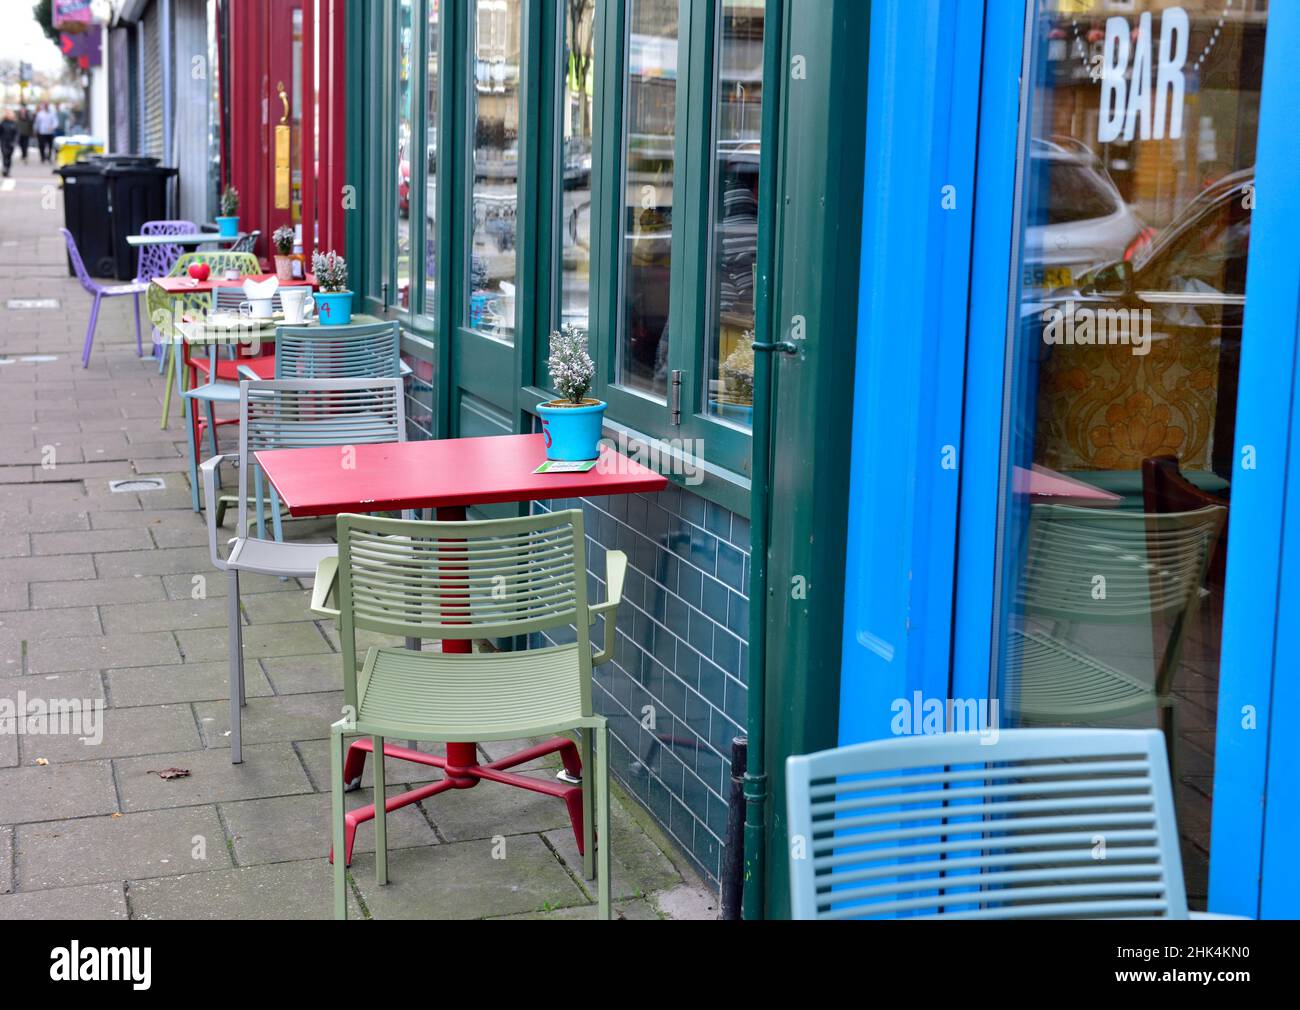 Fila di tavoli e sedie colorati vuoti sul marciapiede all'esterno del bar cafè in attesa dei clienti Foto Stock